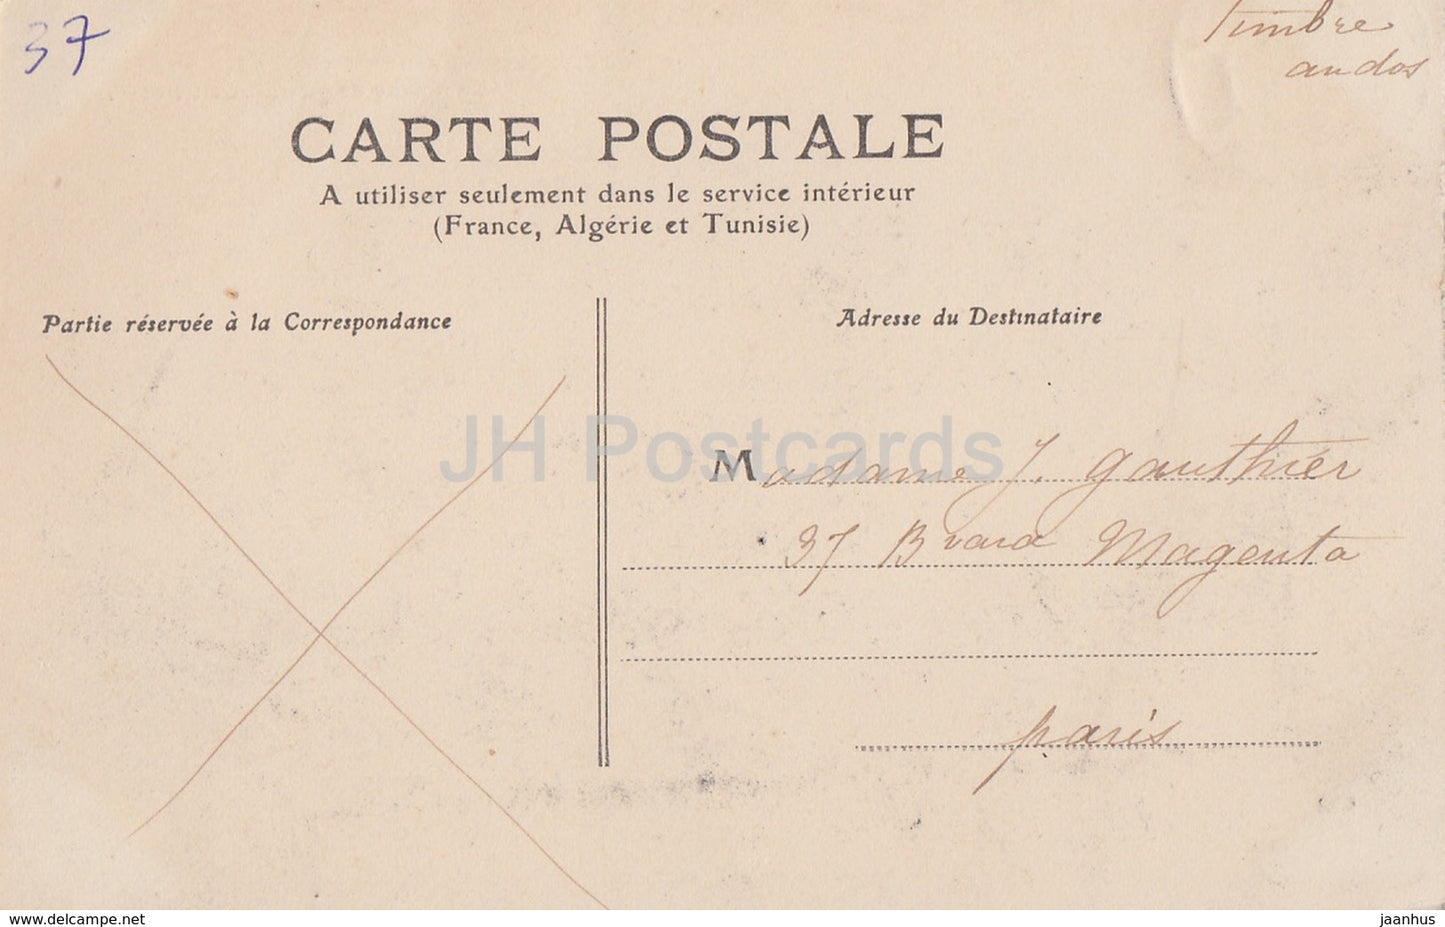 Commune de Nouzilly - Chateau de l'Orfraisiere - castle - 2 - old postcard - France - used